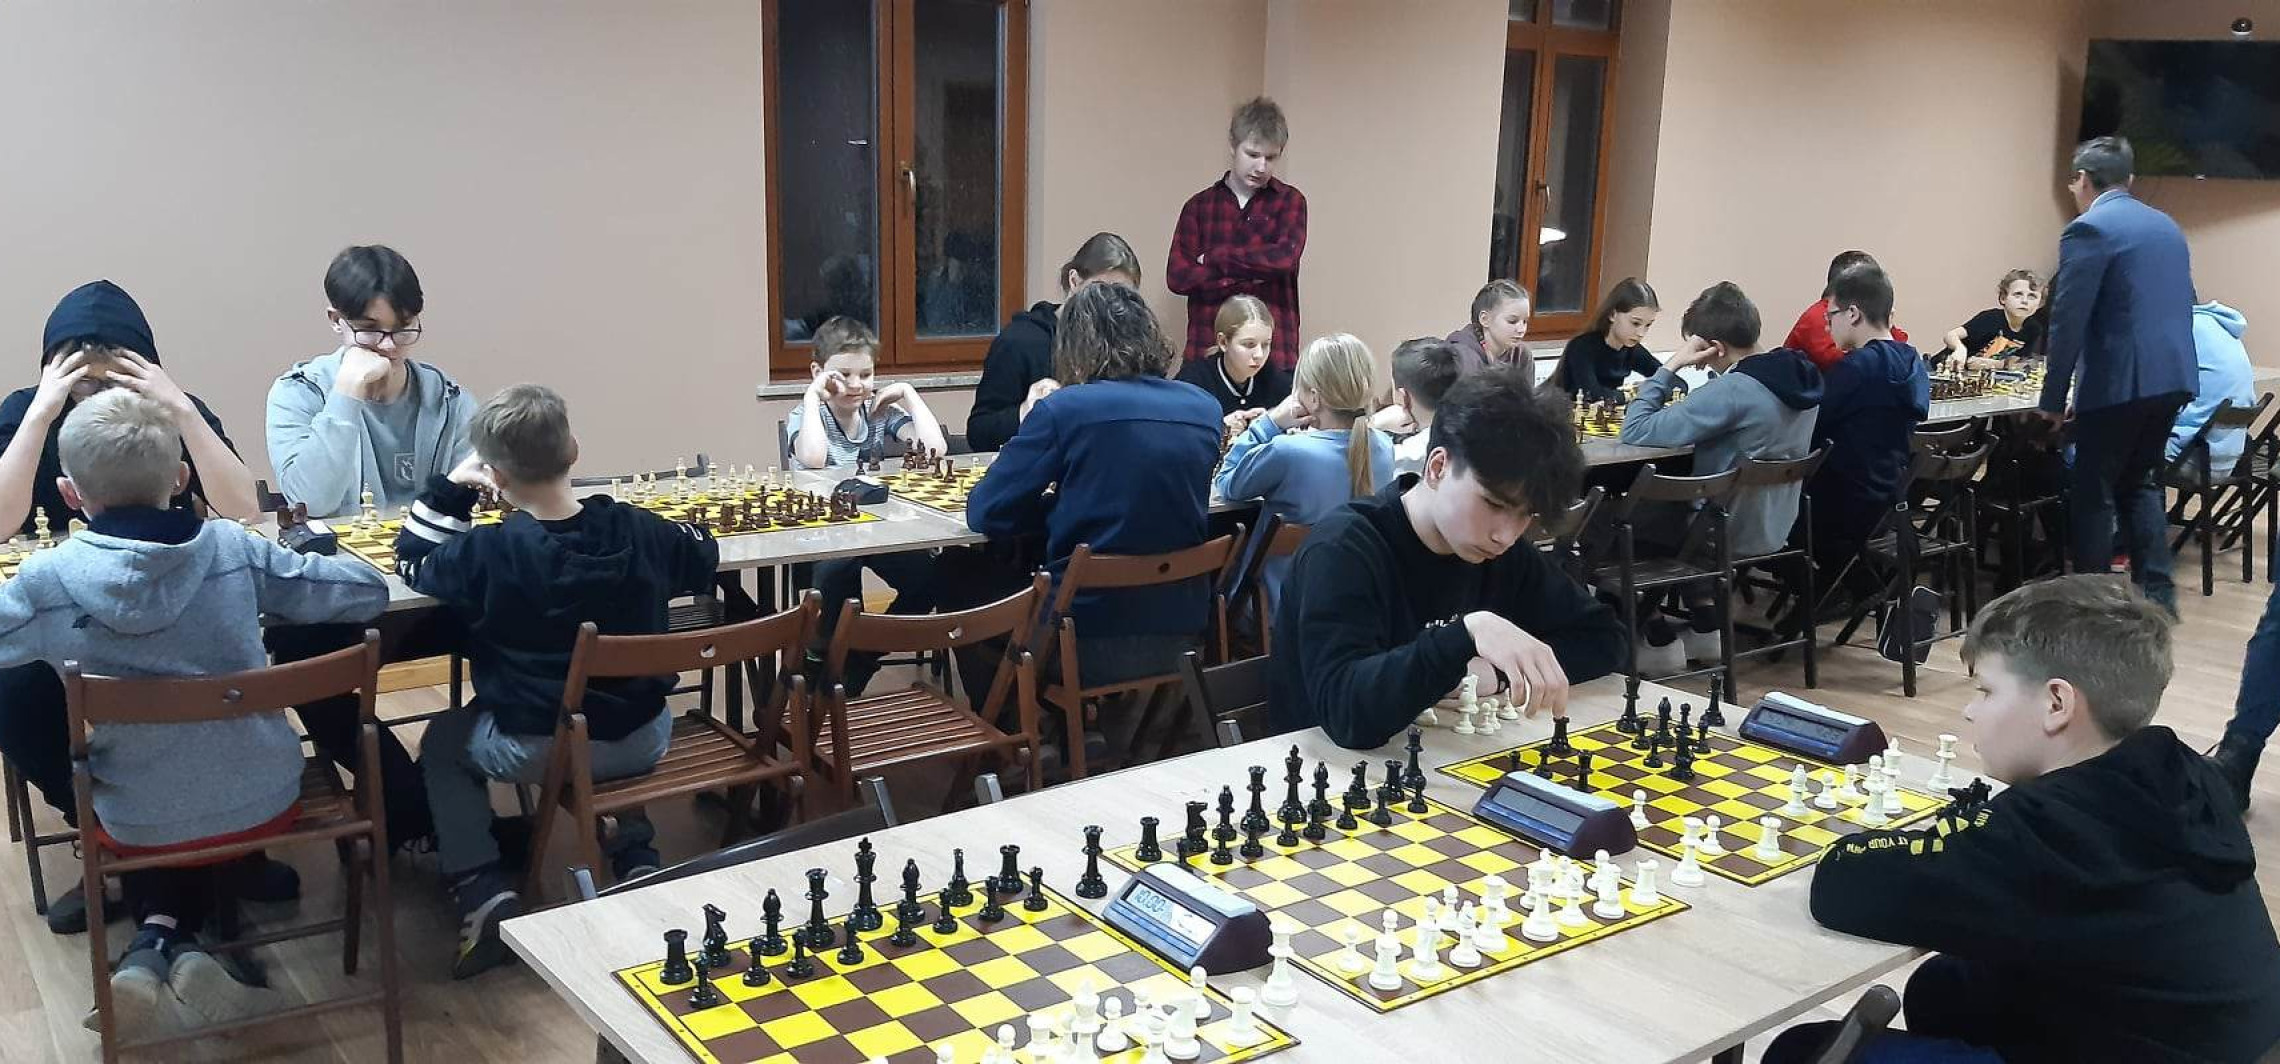 Inowrocław - Bombka Bosmana trafiła do Wiktora, który w turnieju szachowym nie miał sobie równych